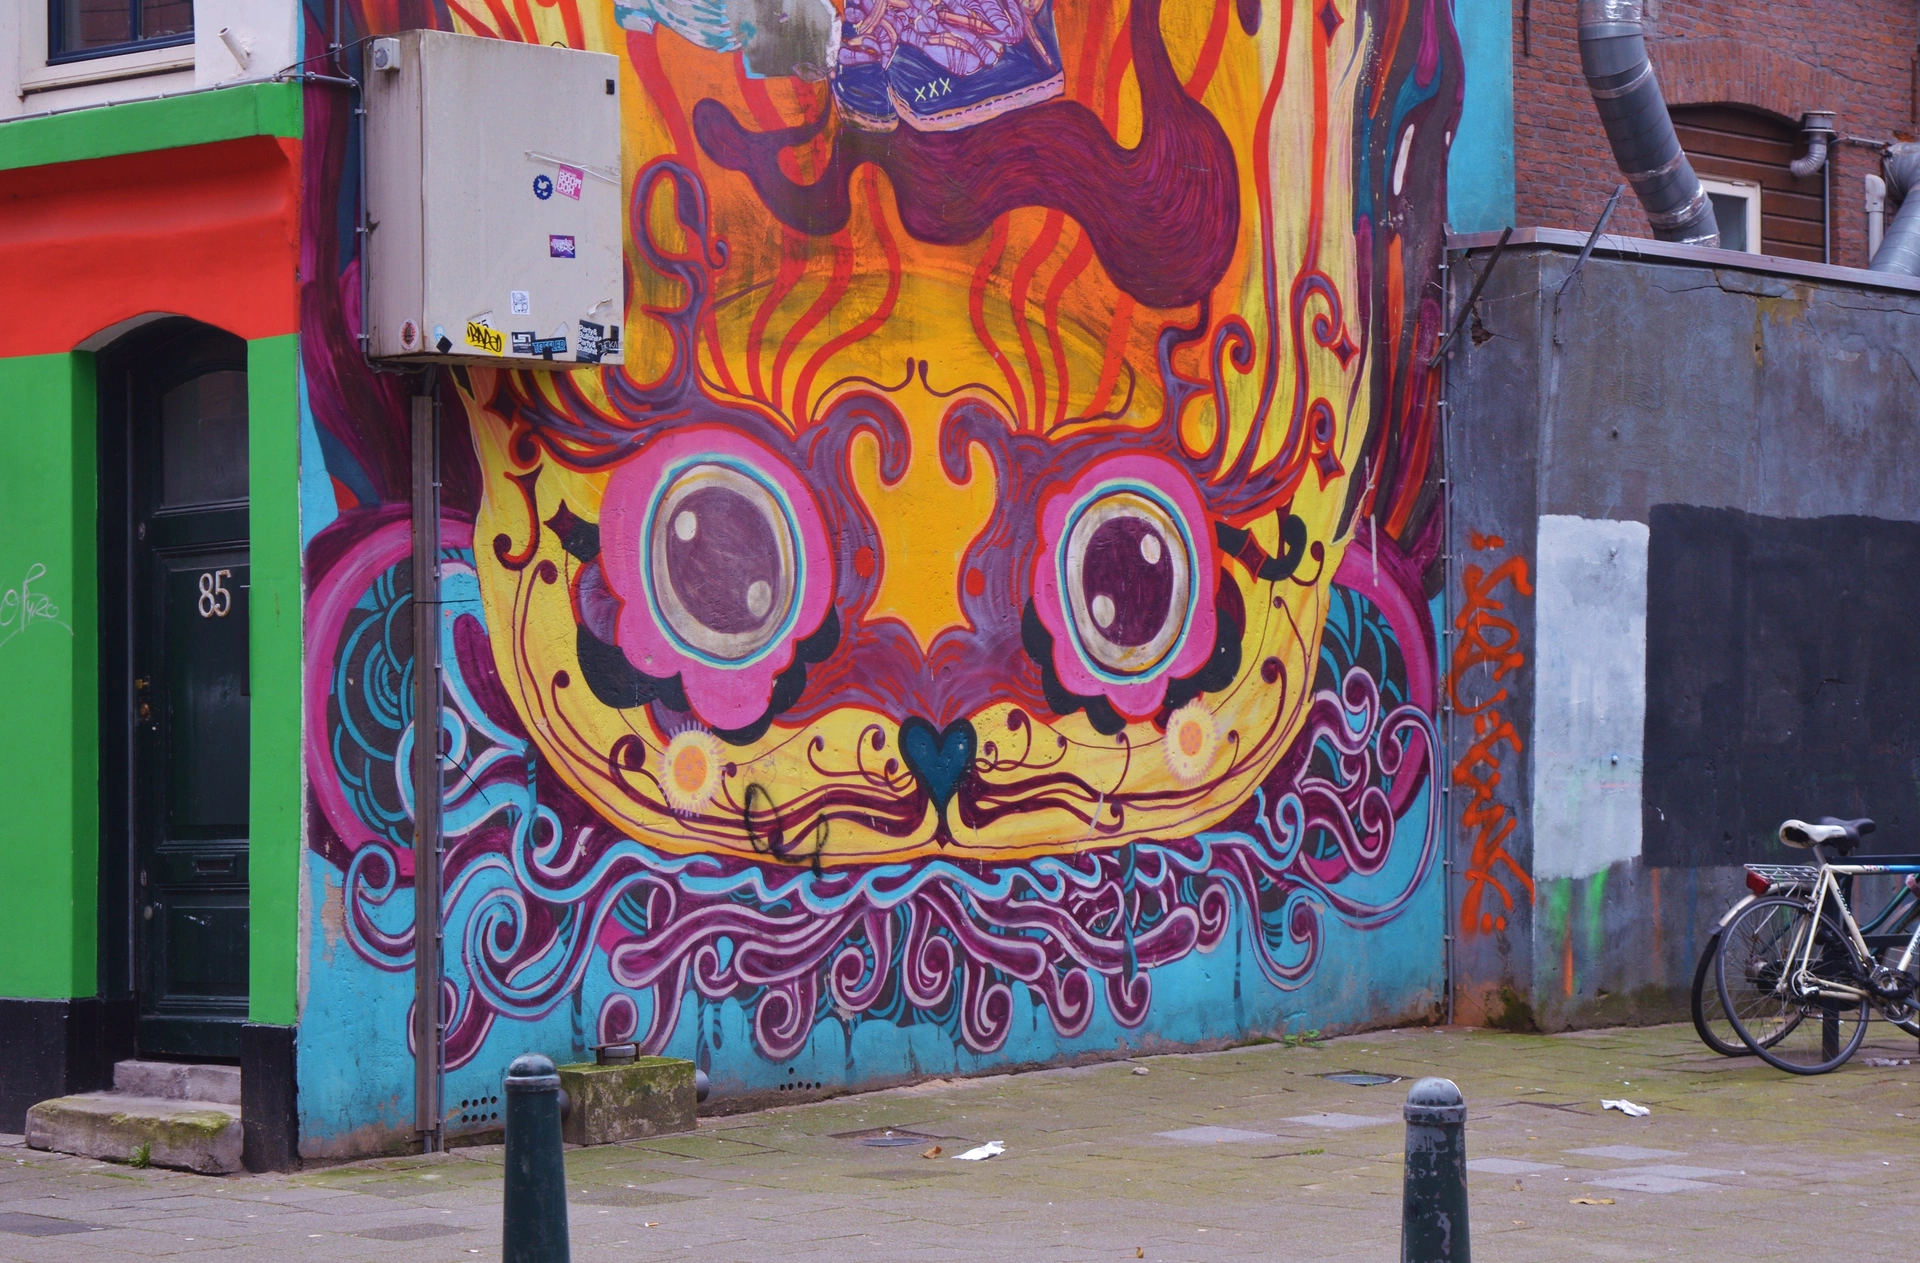 Oeuvre de Street Art réalisée par Ramon martins à Rotterdam